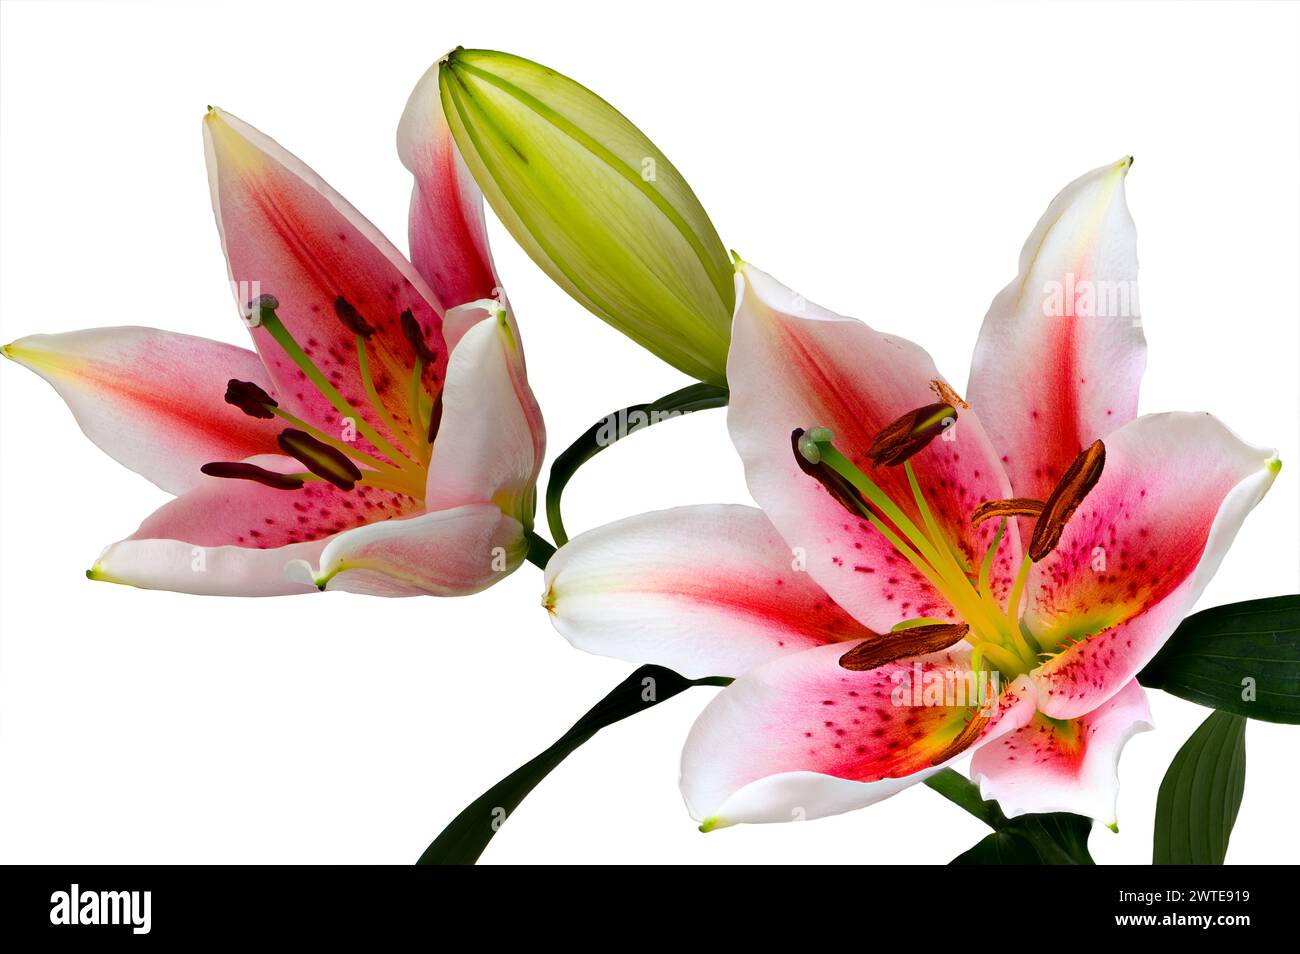 Image empilée de fleurs et de bourgeons de lys de stargazer (lilium orientalis) sur fond blanc Banque D'Images